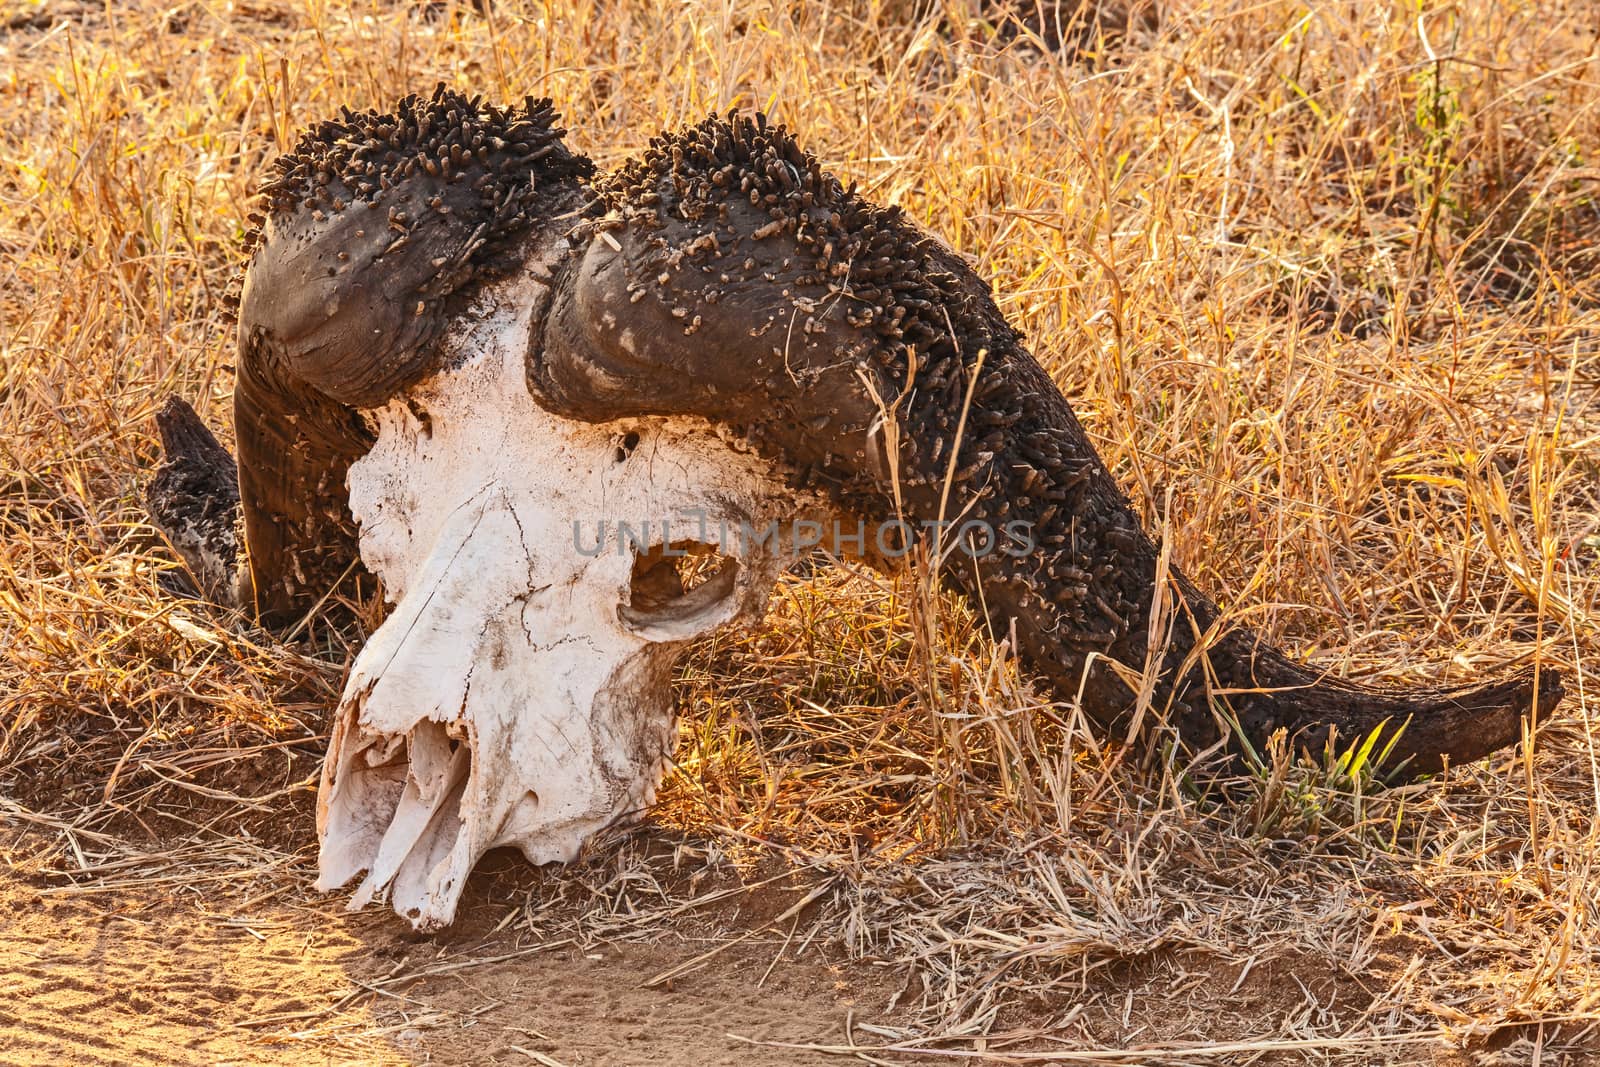 Cape Buffalo Skull by kobus_peche